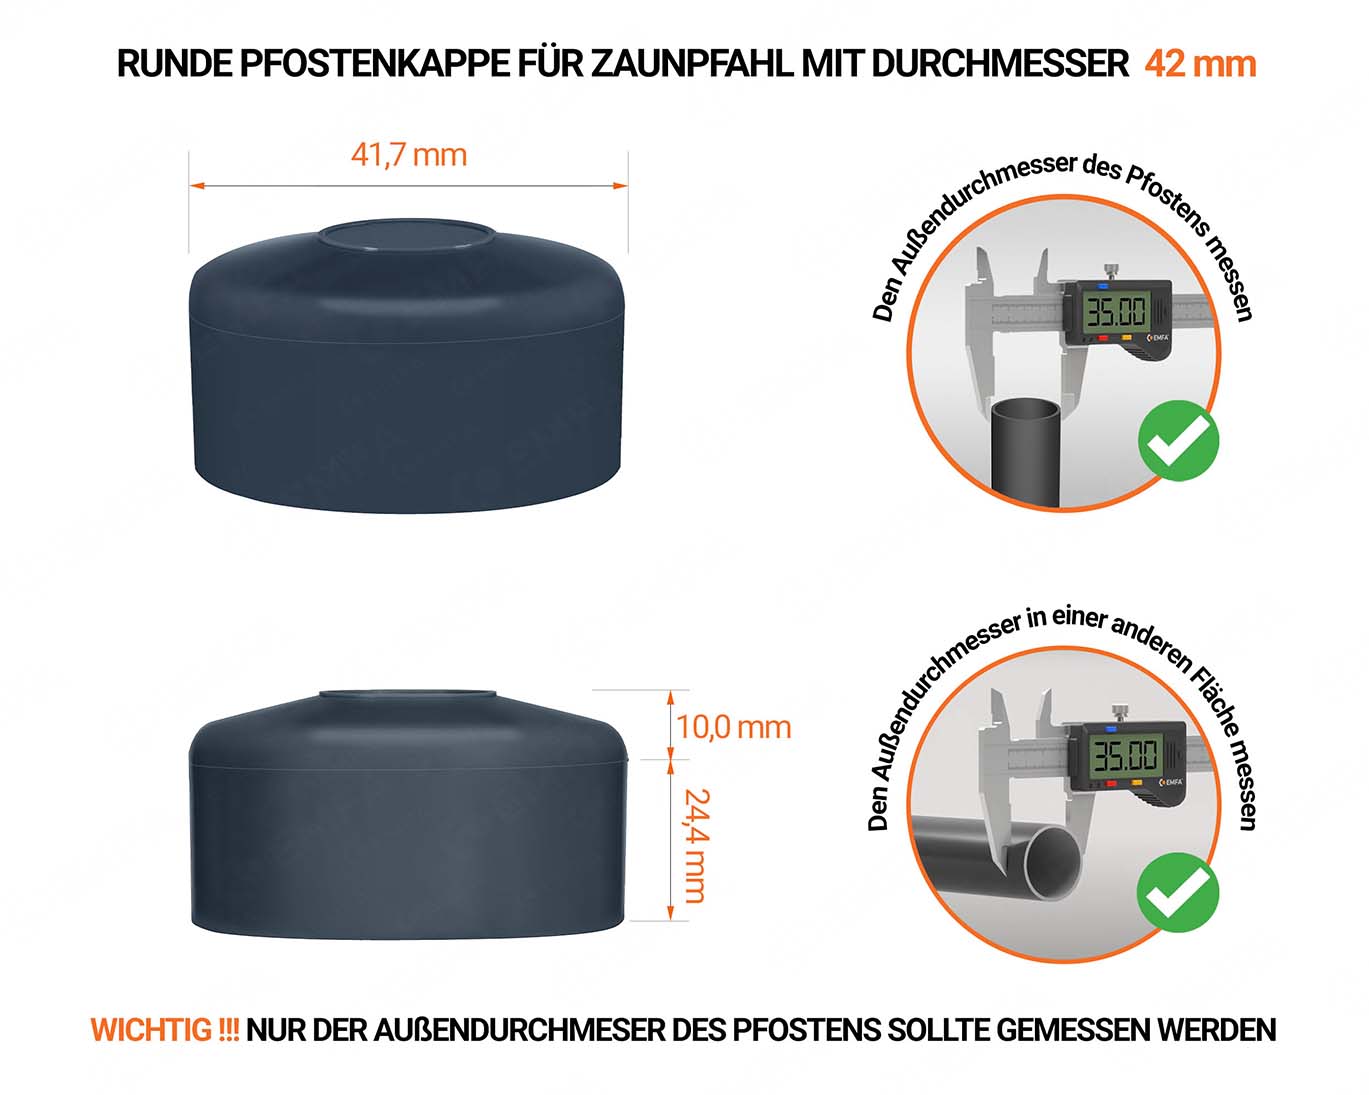 Anthrazite Pfostenkappen rund für Pfostendurchmesser  42 mm mit technischen Abmessungen und Anleitung für korrekte Messung